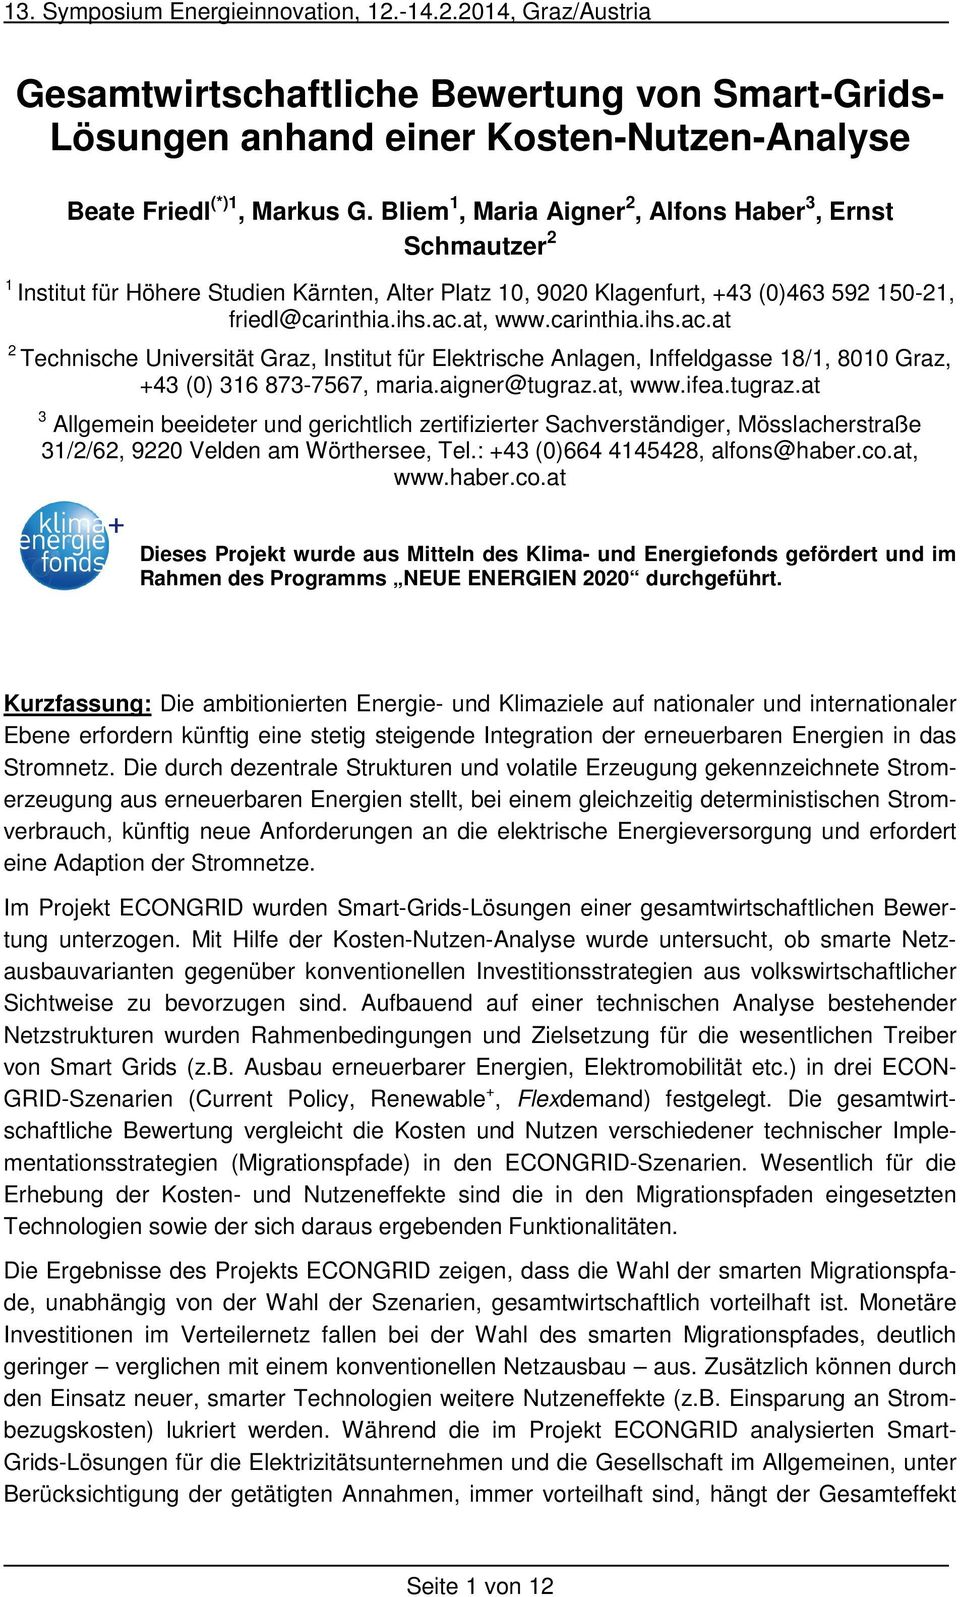 at, www.carinthia.ihs.ac.at 2 Technische Universität Graz, Institut für Elektrische Anlagen, Inffeldgasse 18/1, 8010 Graz, +43 (0) 316 873-7567, maria.aigner@tugraz.